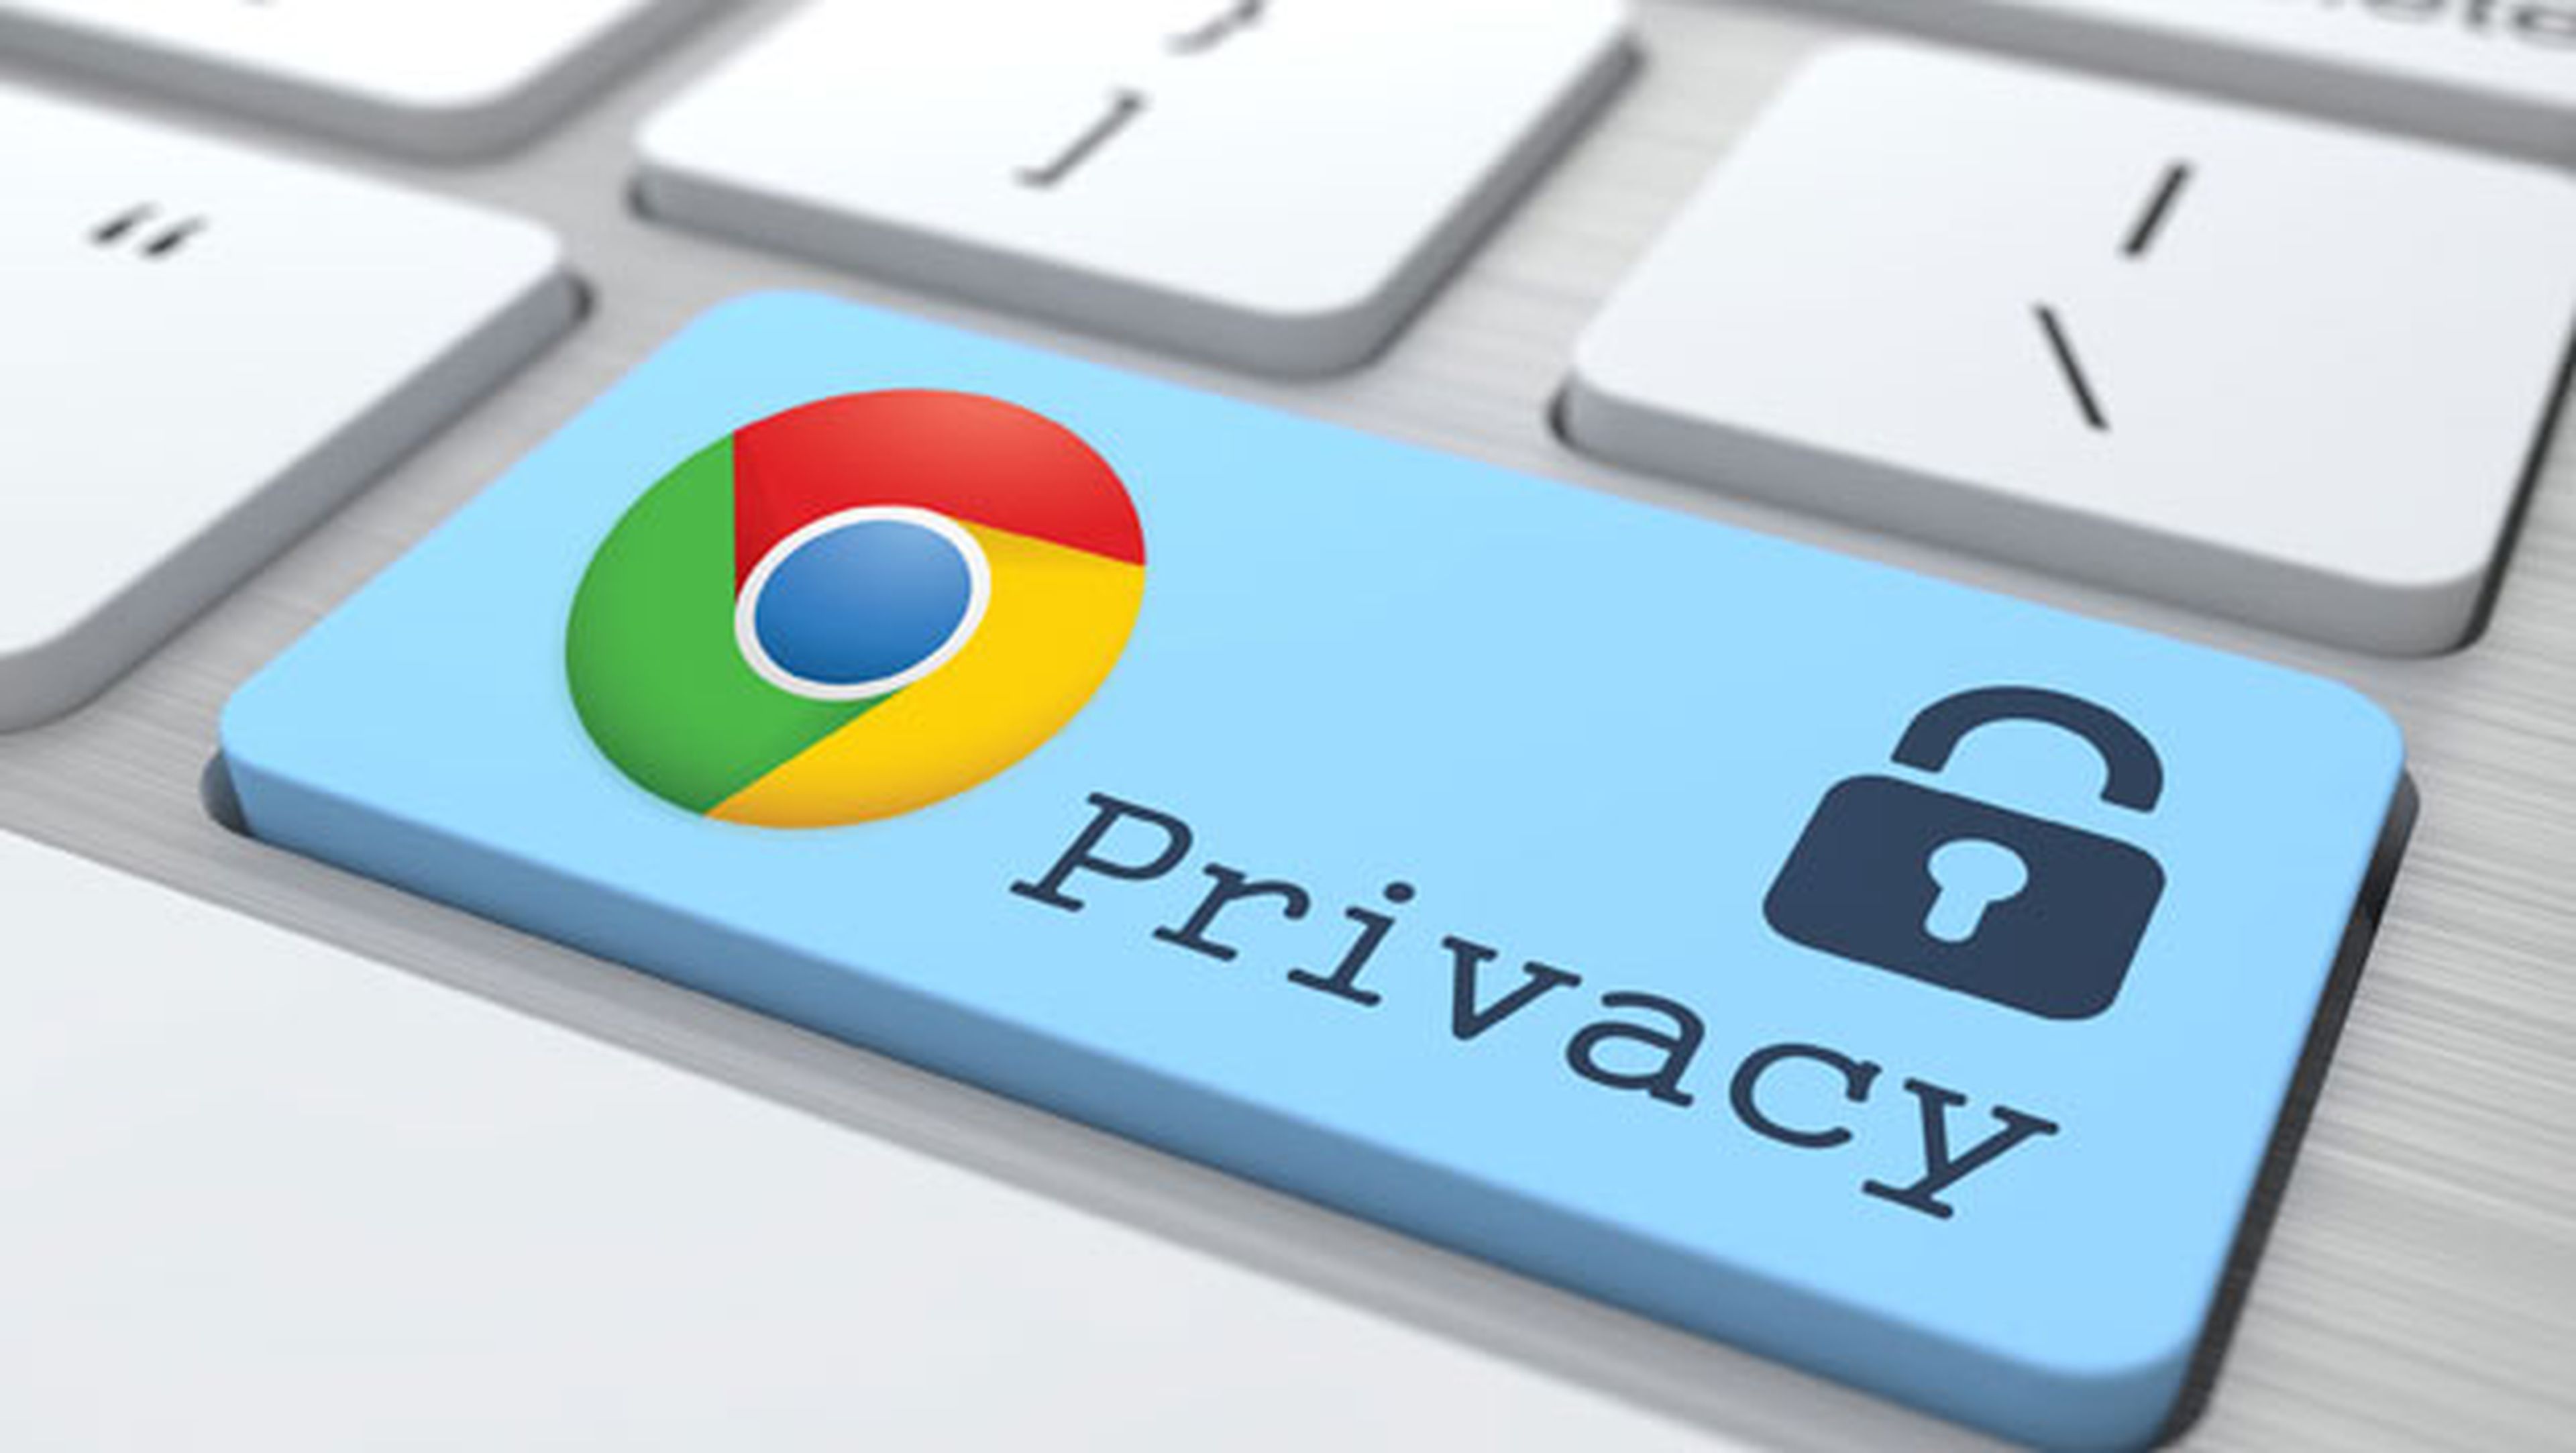 Cómo configurar Chrome para mejorar la privacidad y seguridad